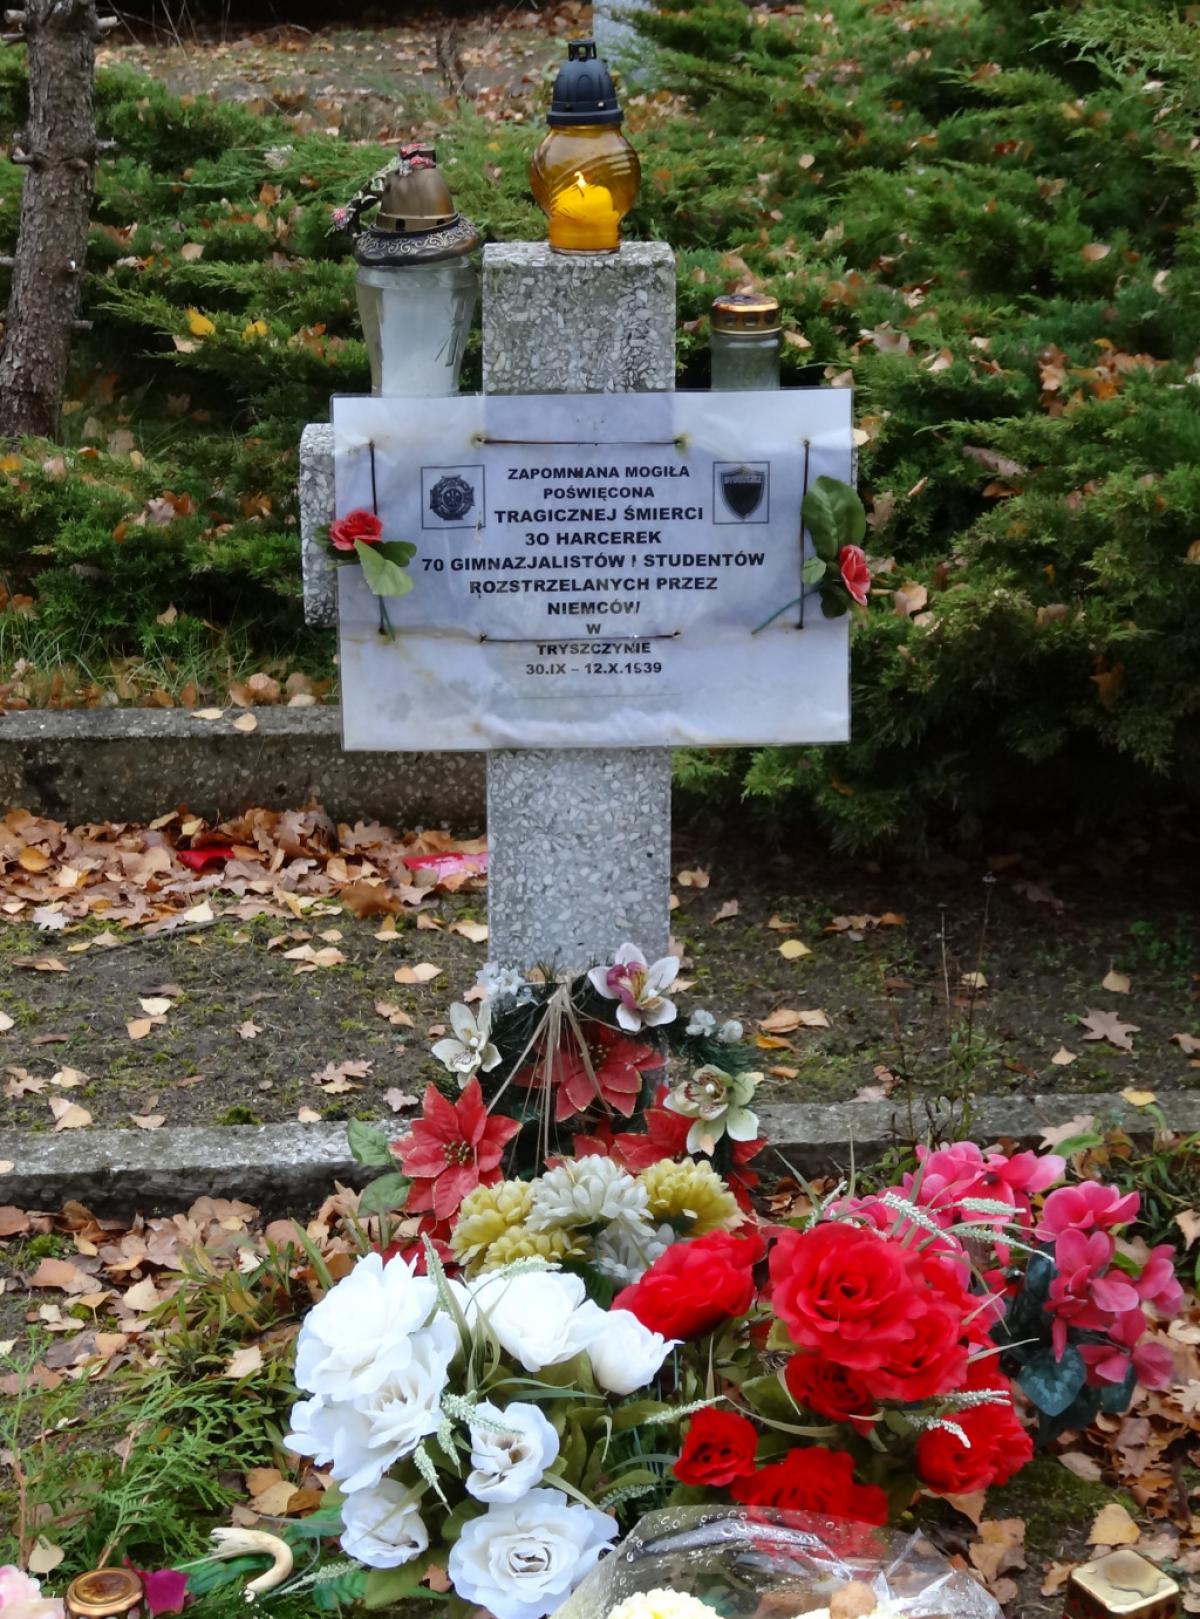 Wikipedia, Cmentarz Bohaterów Bydgoszczy, Self-published work